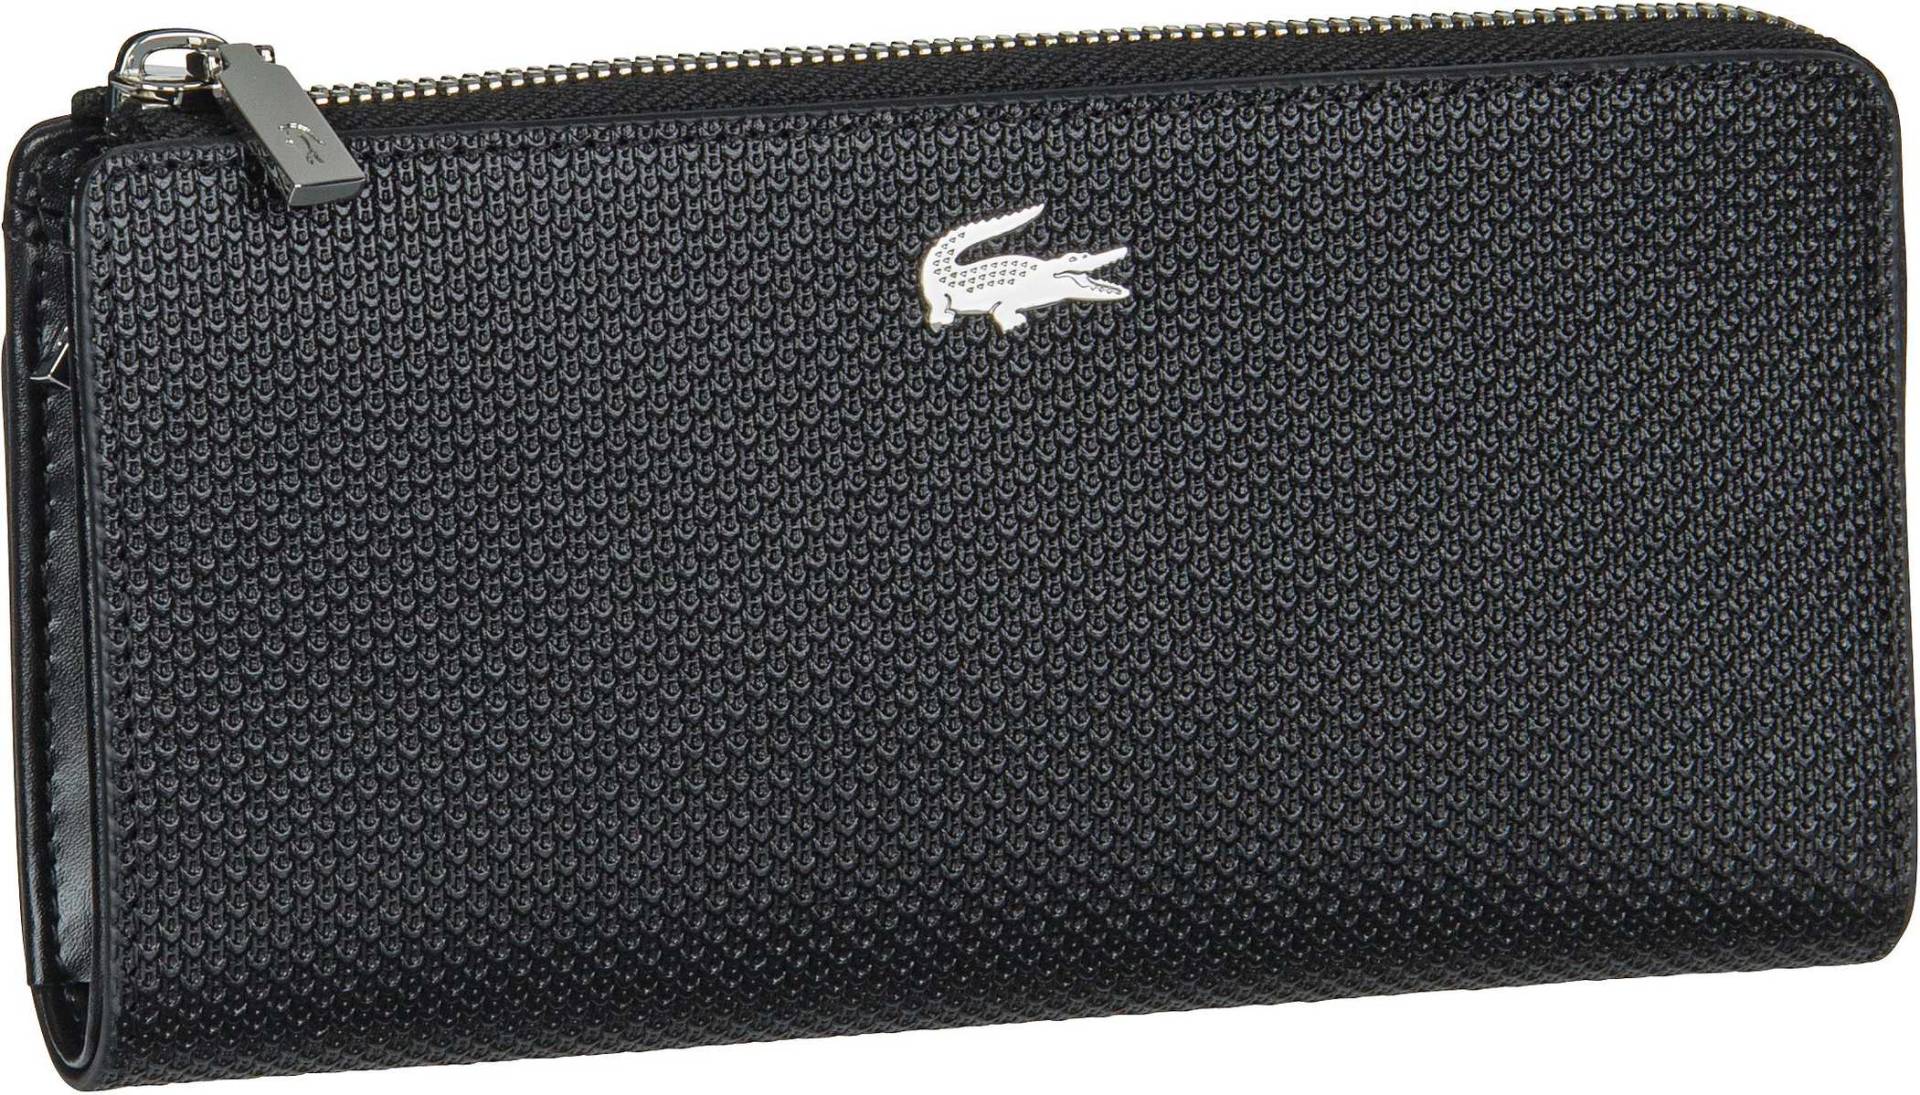 Lacoste Chantaco Classic Slim Zip Wallet 3580  in Schwarz (0.5 Liter), Geldbörse von Lacoste